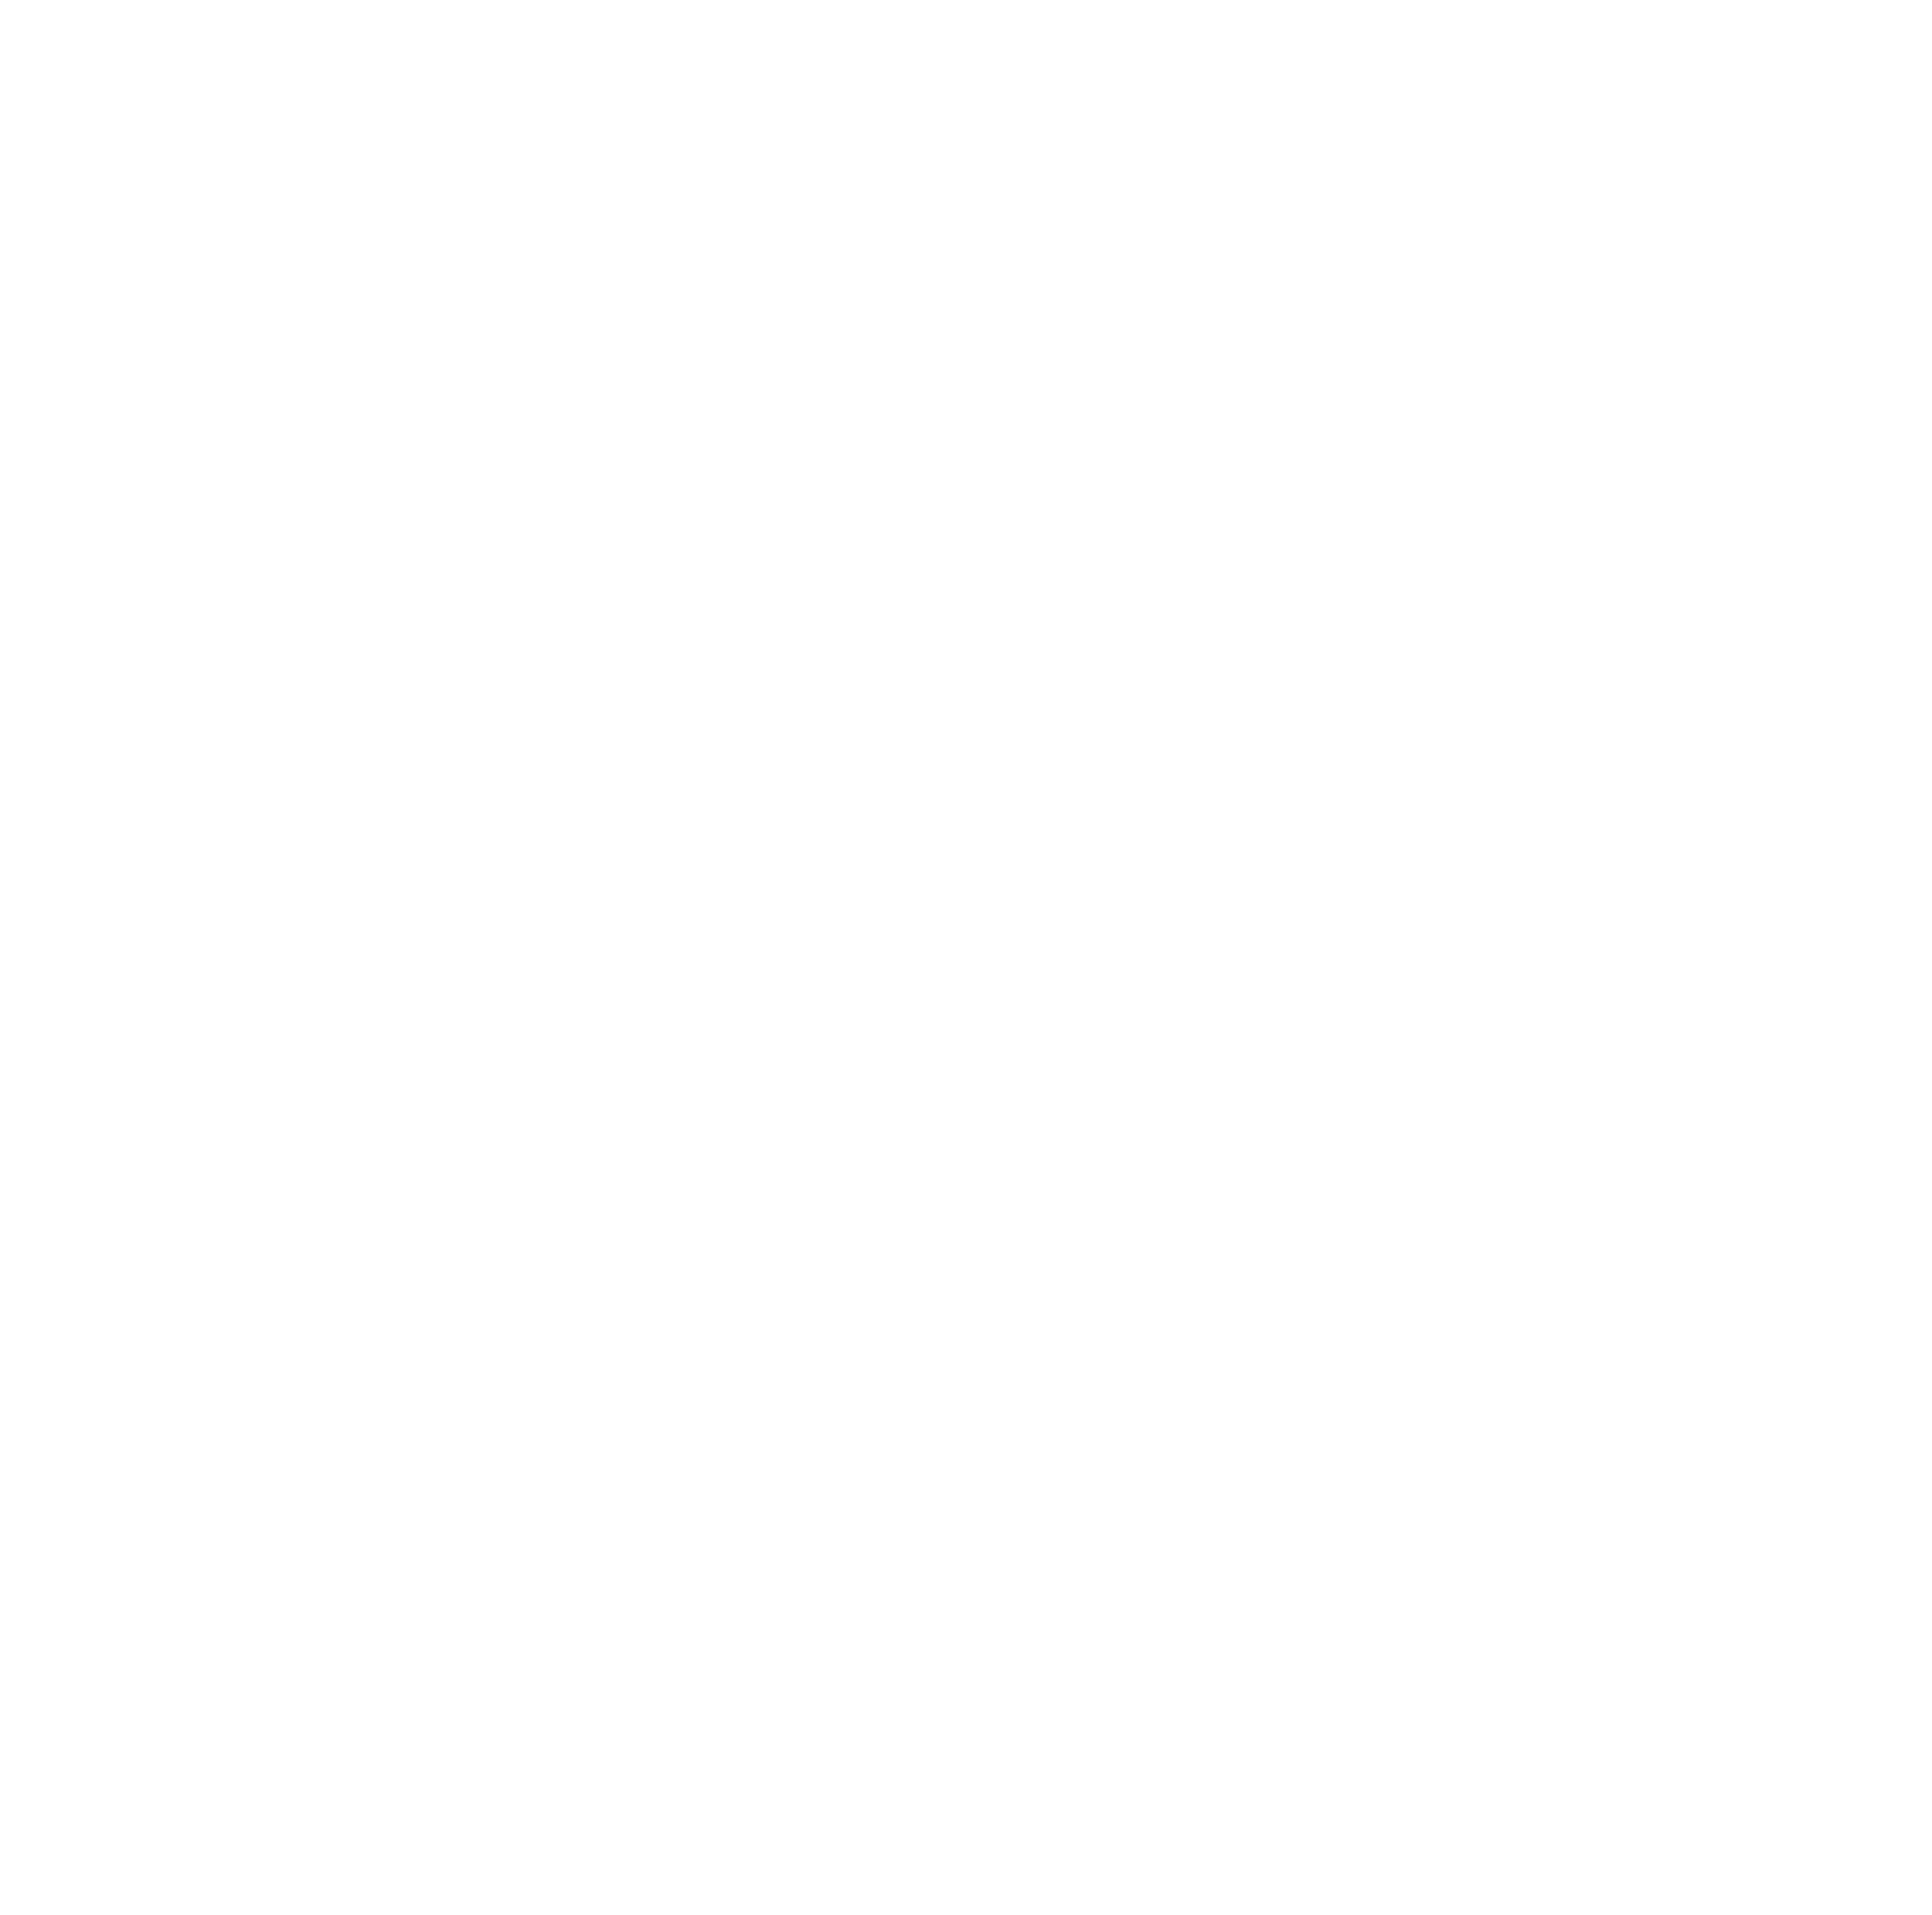 ALLDV studio Ostrava